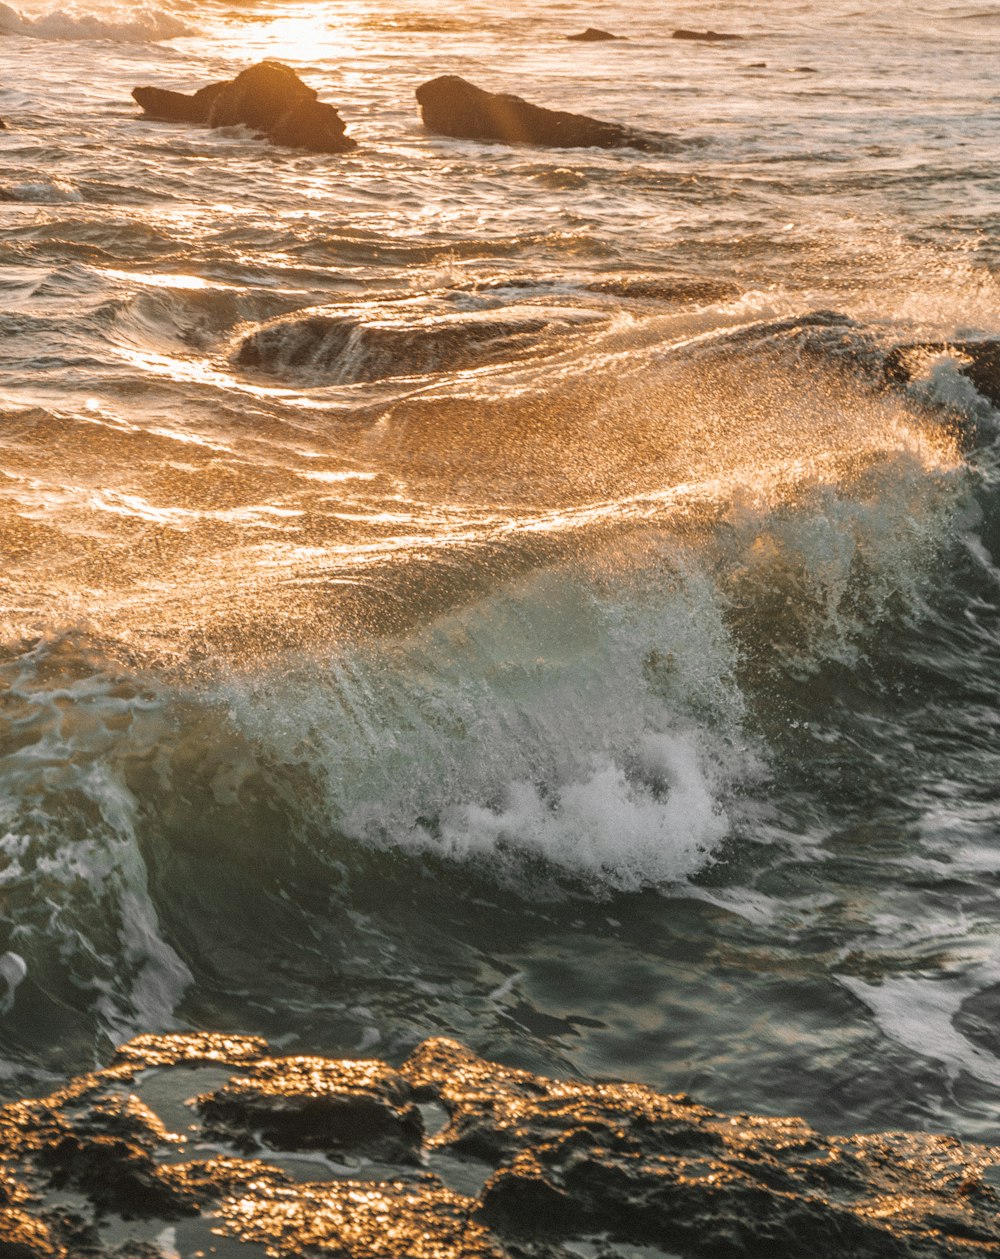 Las olas de agua golpean las rocas marrones durante el día